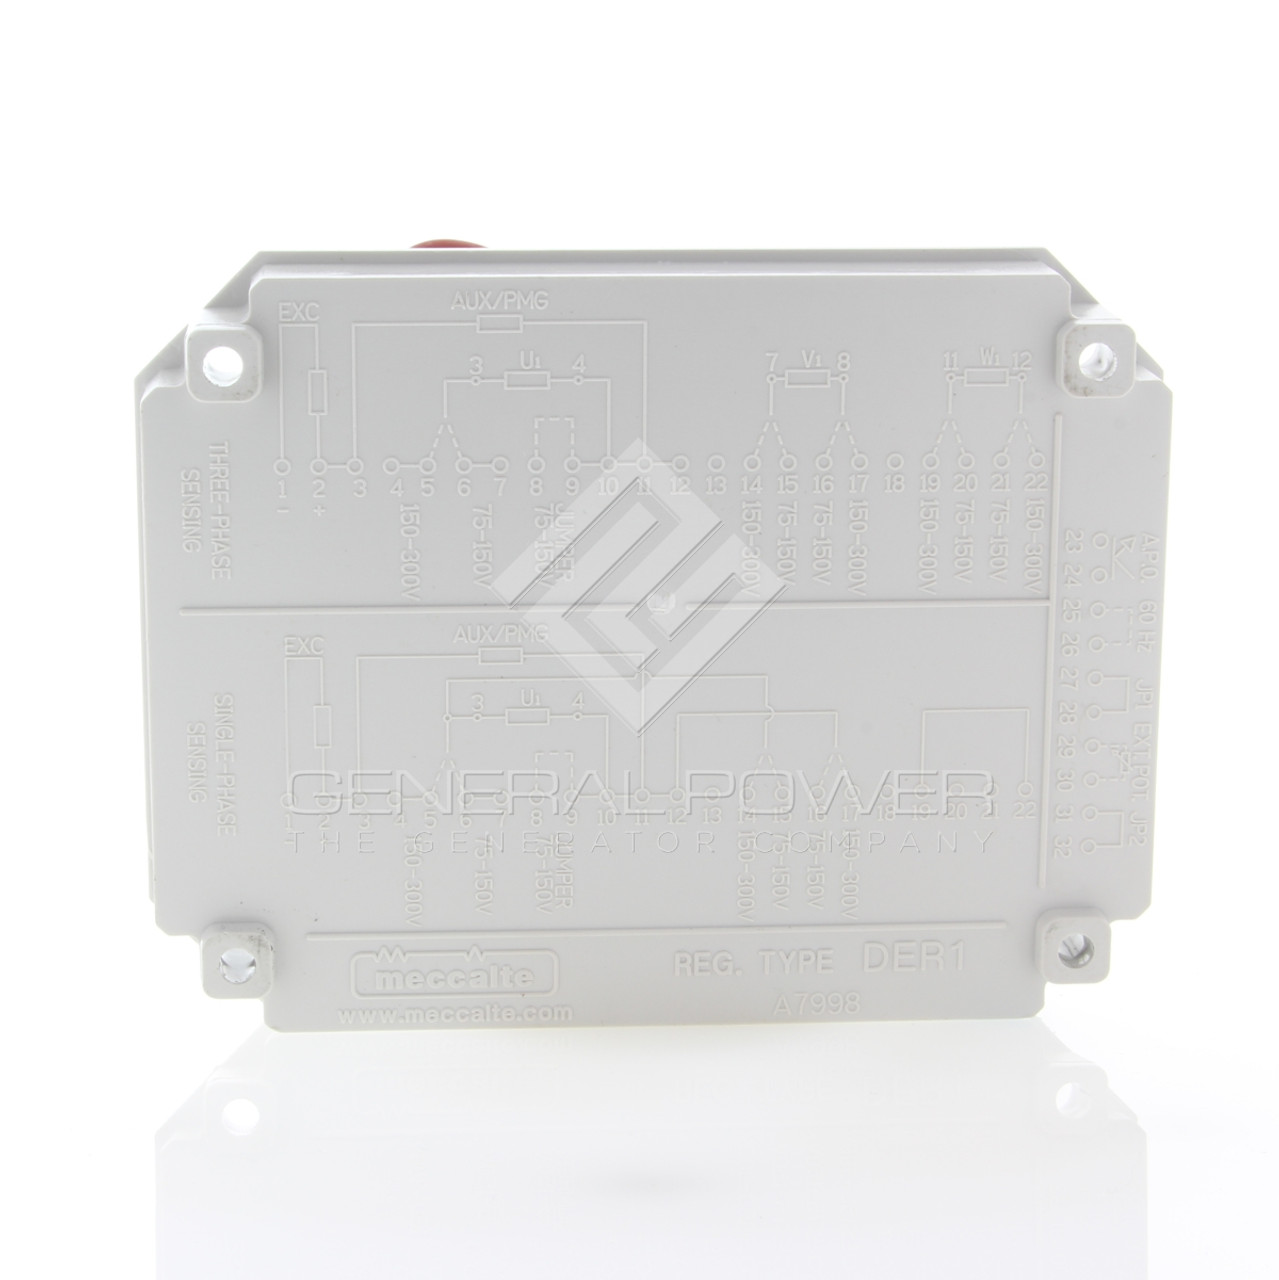 Mecc Alte Spannungsregler AVR DER1 für Generatoraggregat